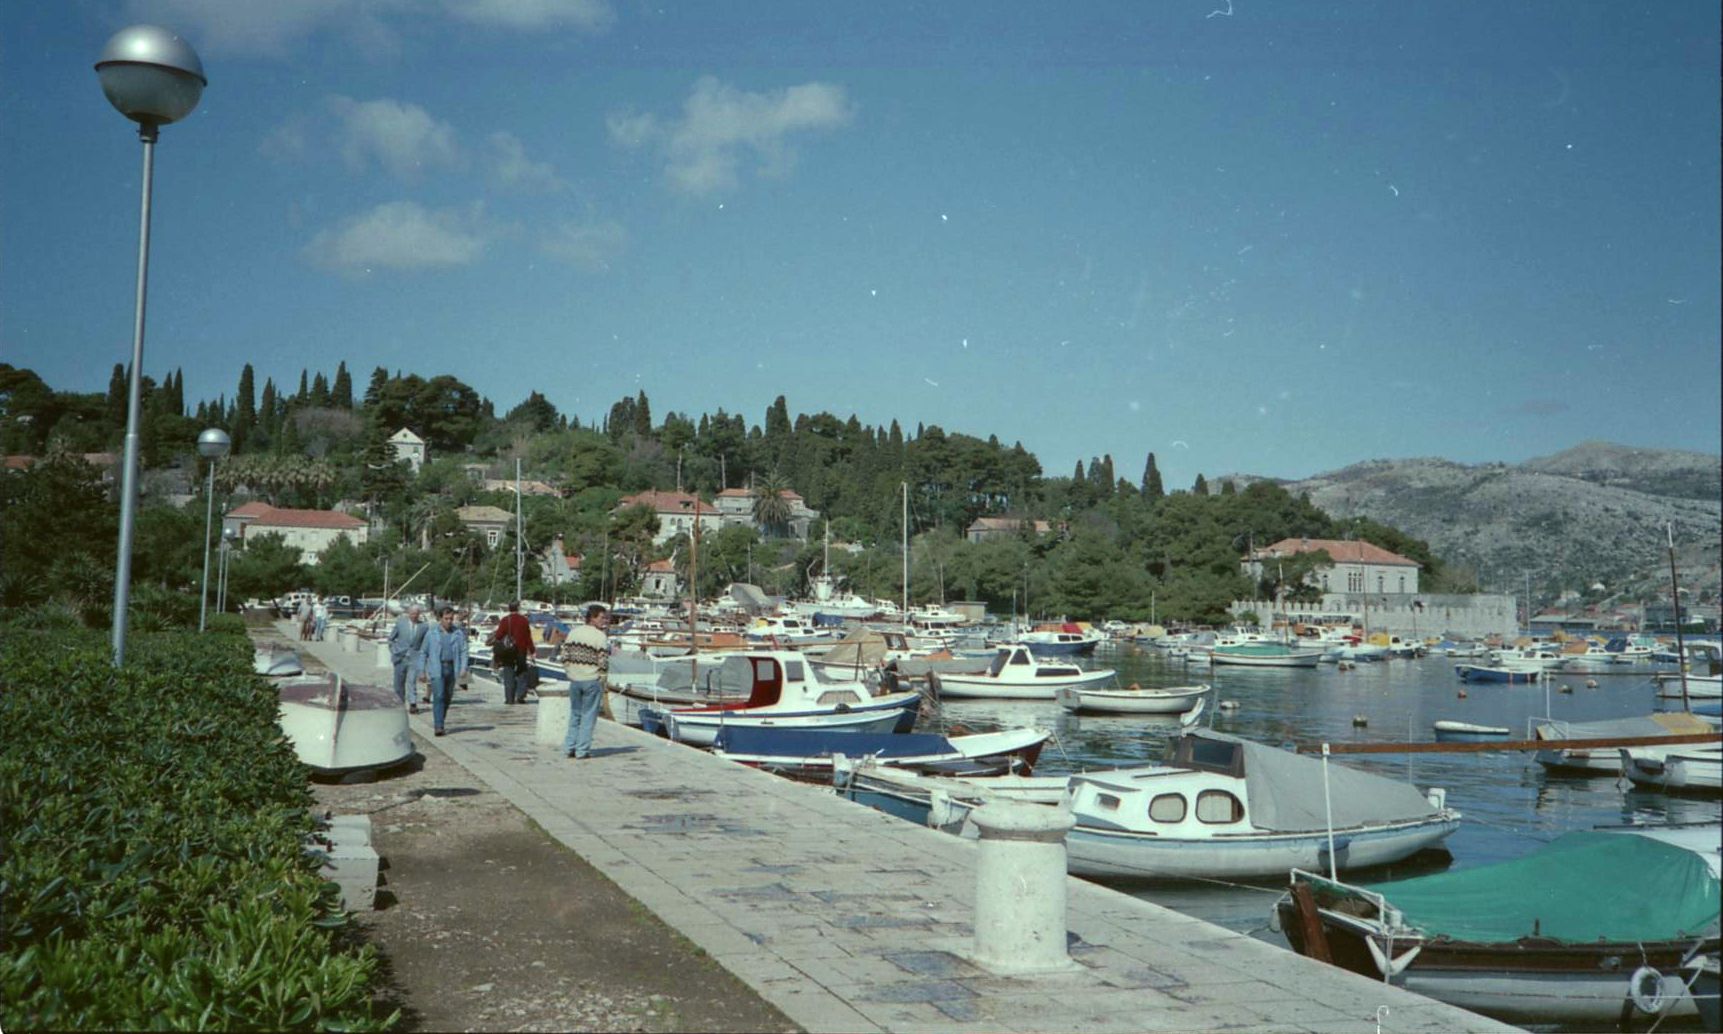 Marina on the Dalmatian Coast of Croatia